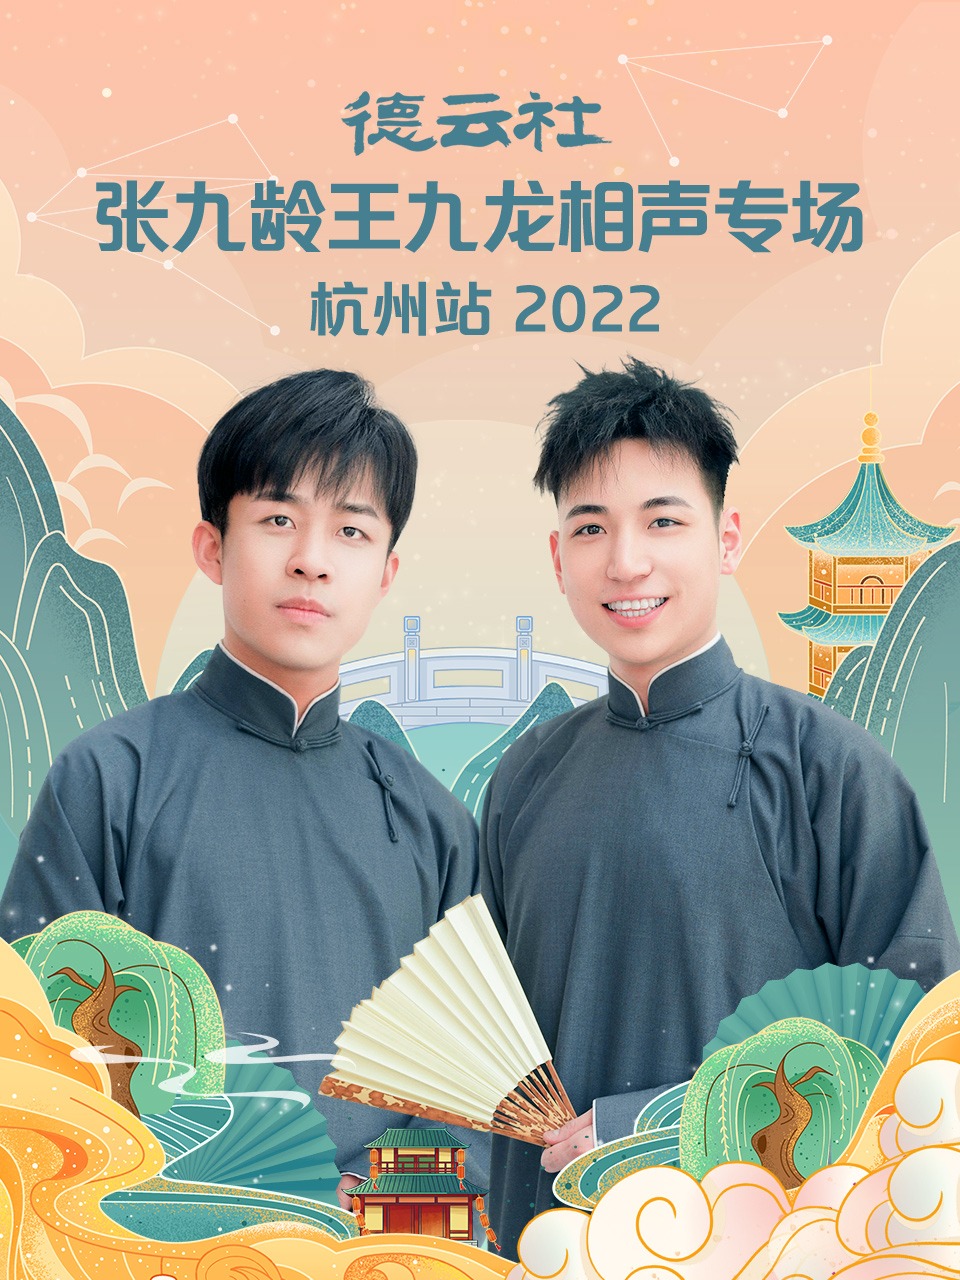 德云社张九龄王九龙相声专场杭州站 2022